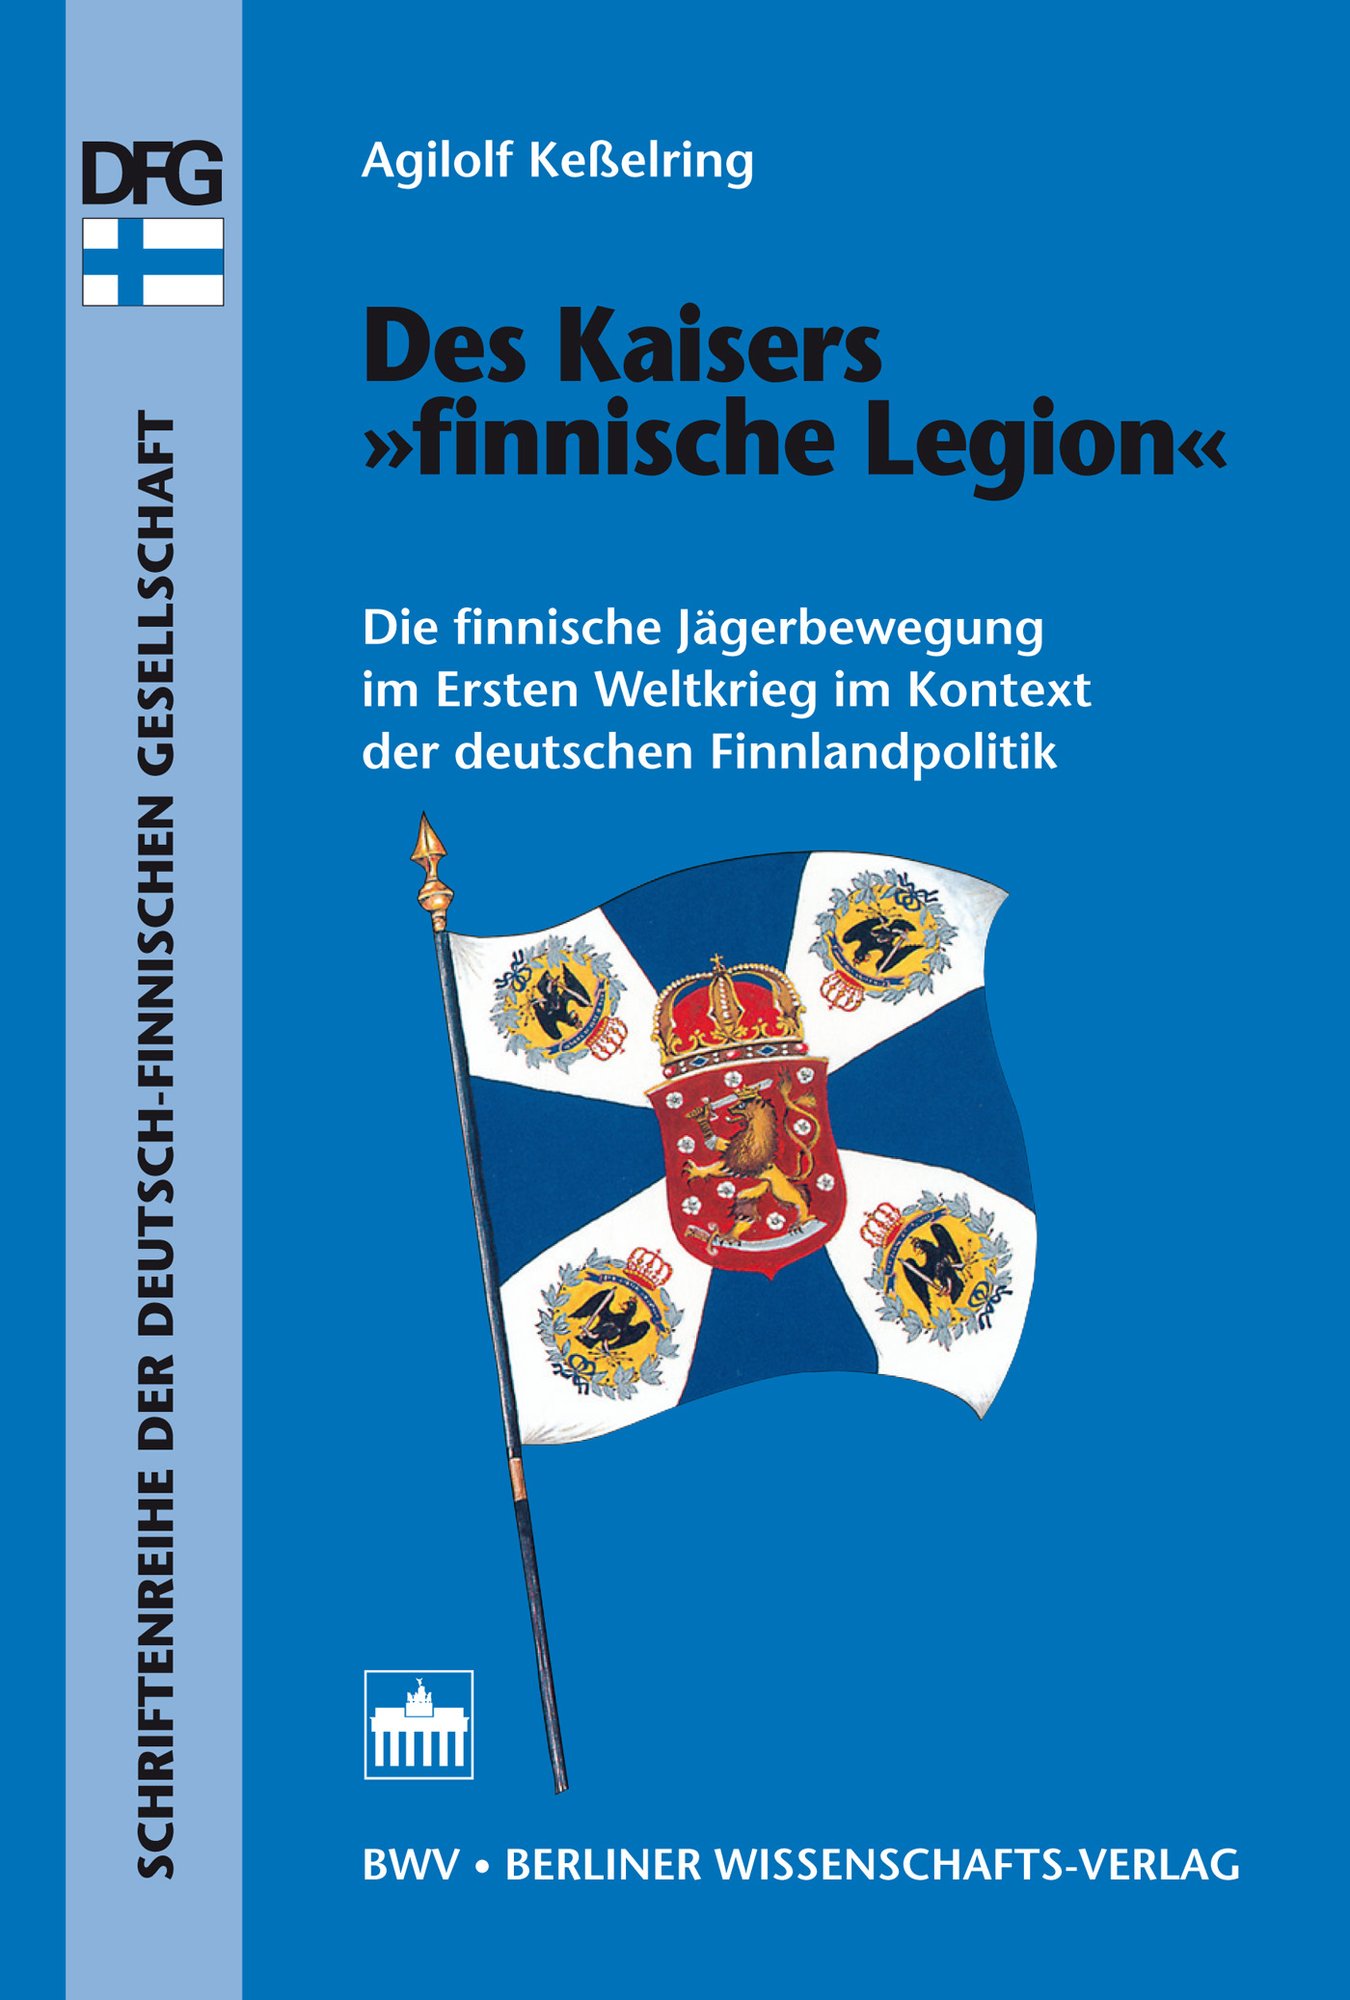 Des Kaisers "finnische Legion"